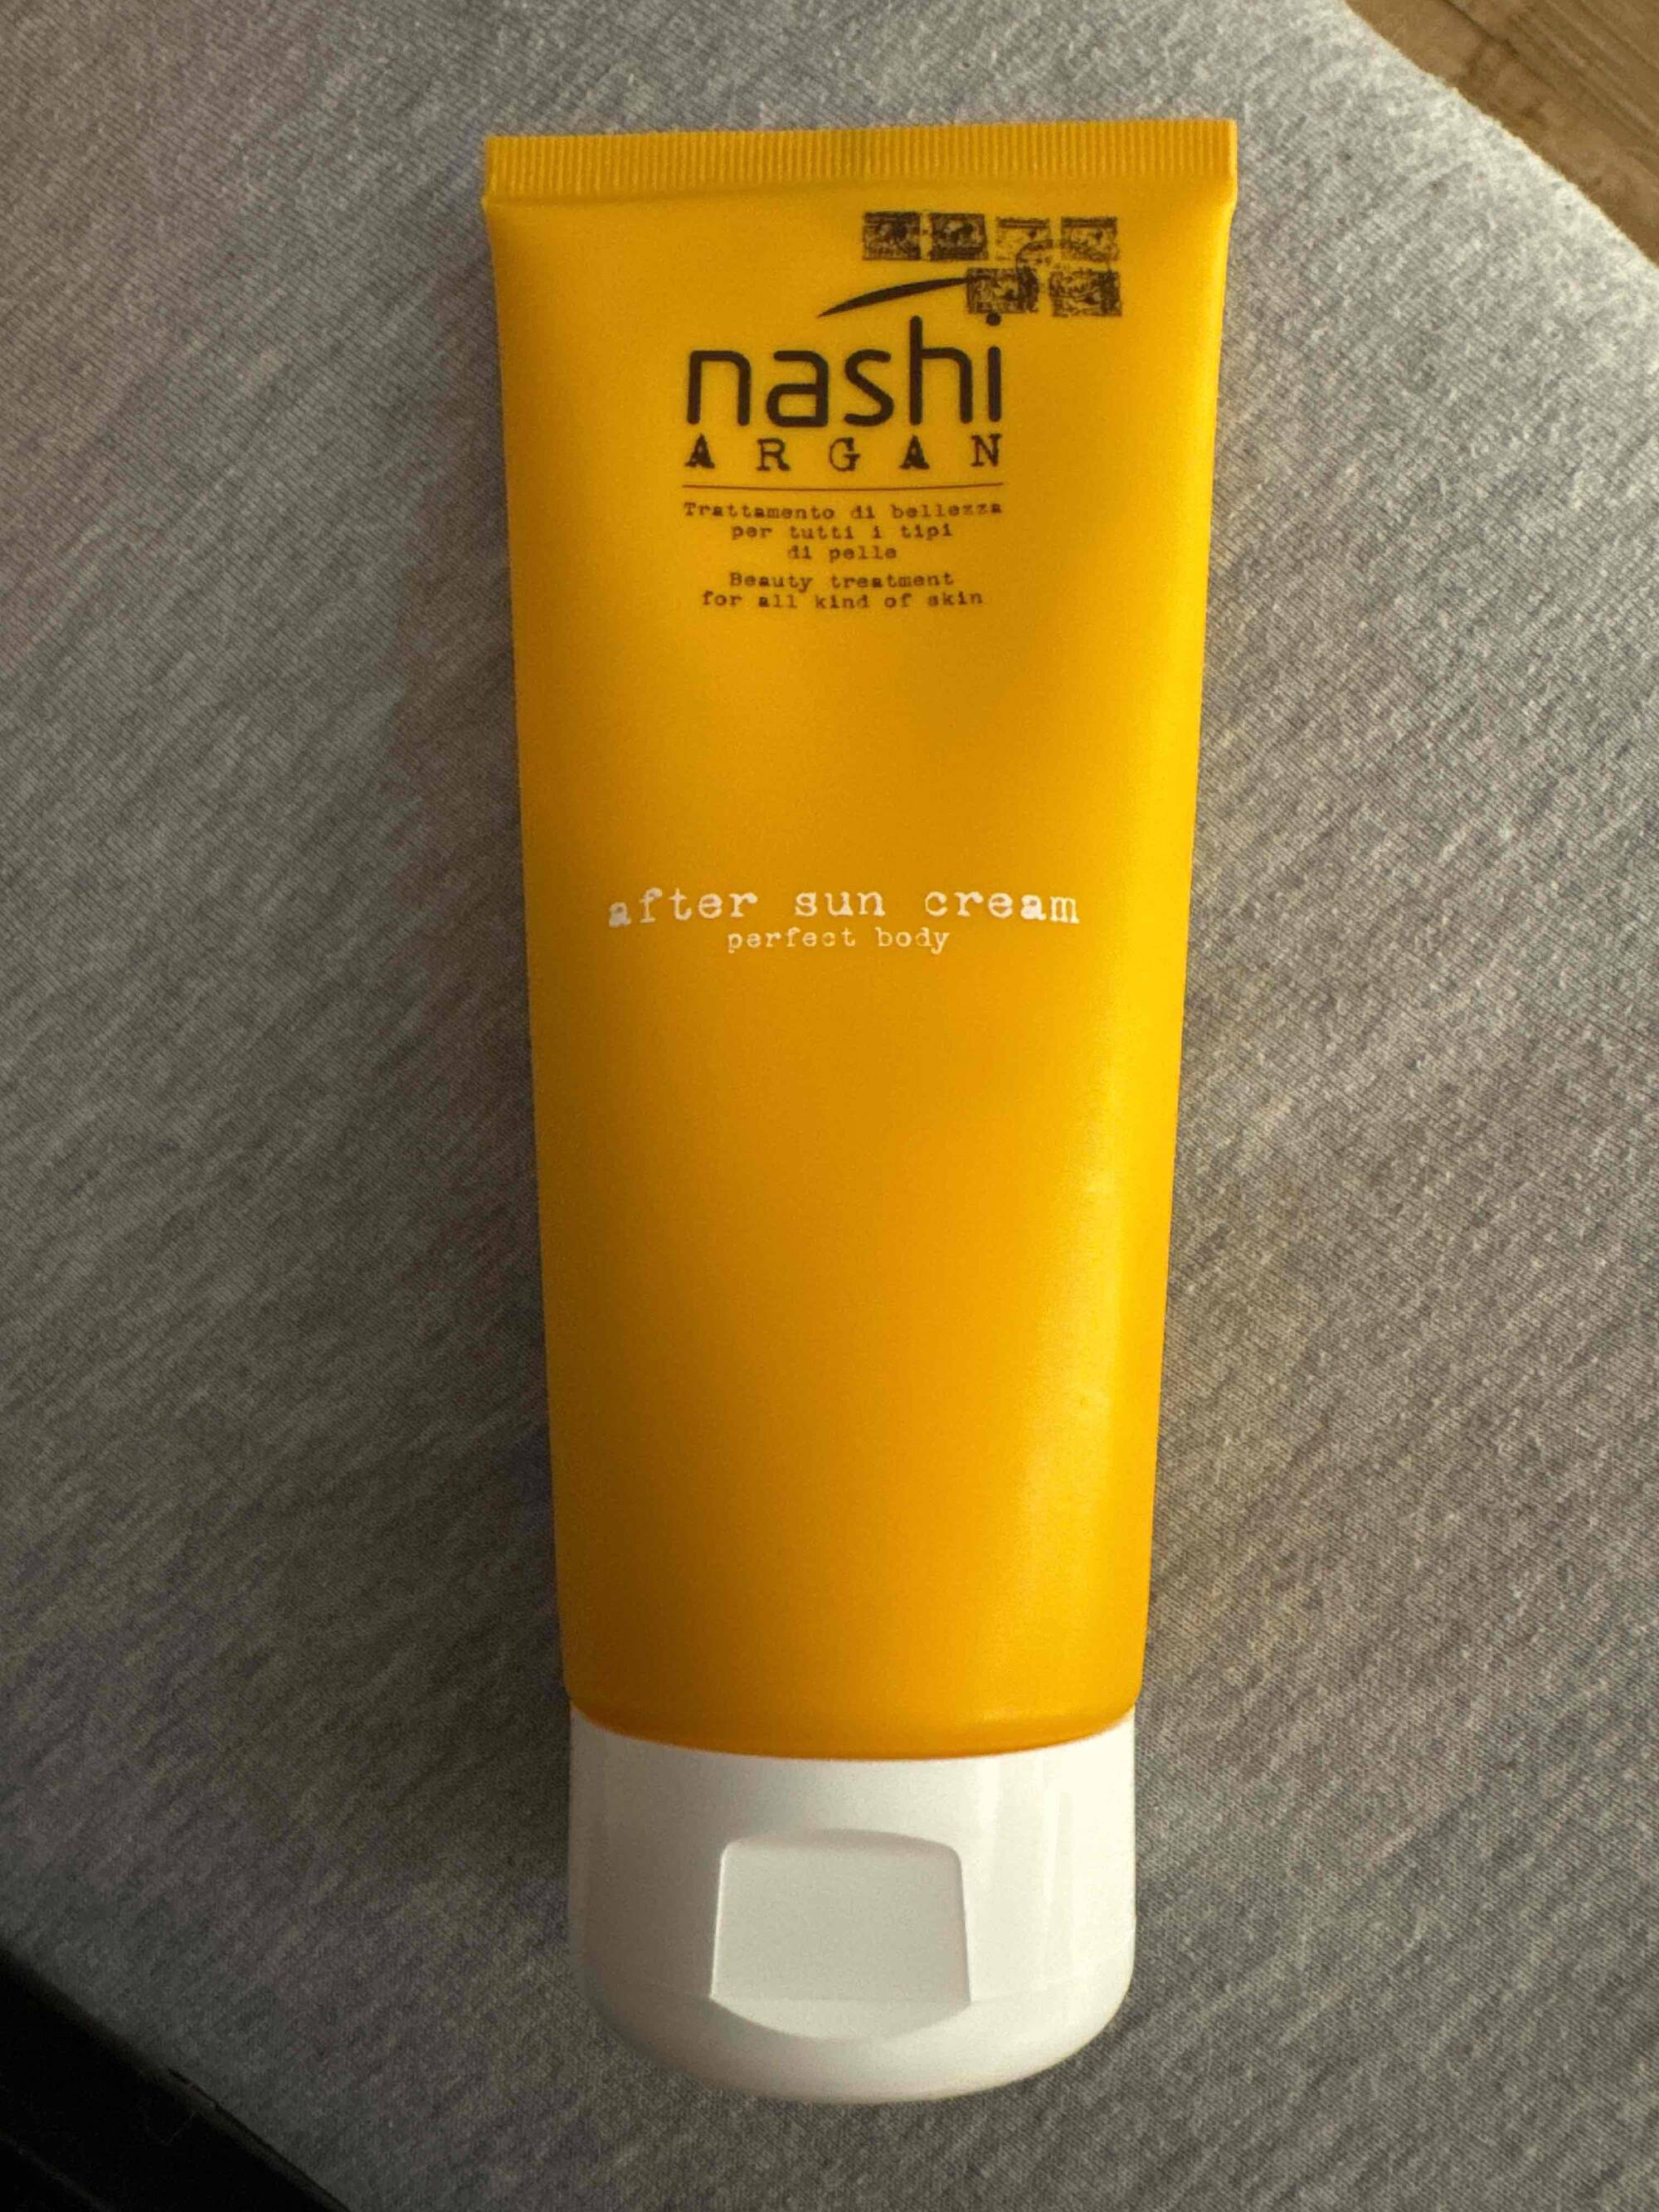 NASHI ARGAN - Perfect body - After sun cream